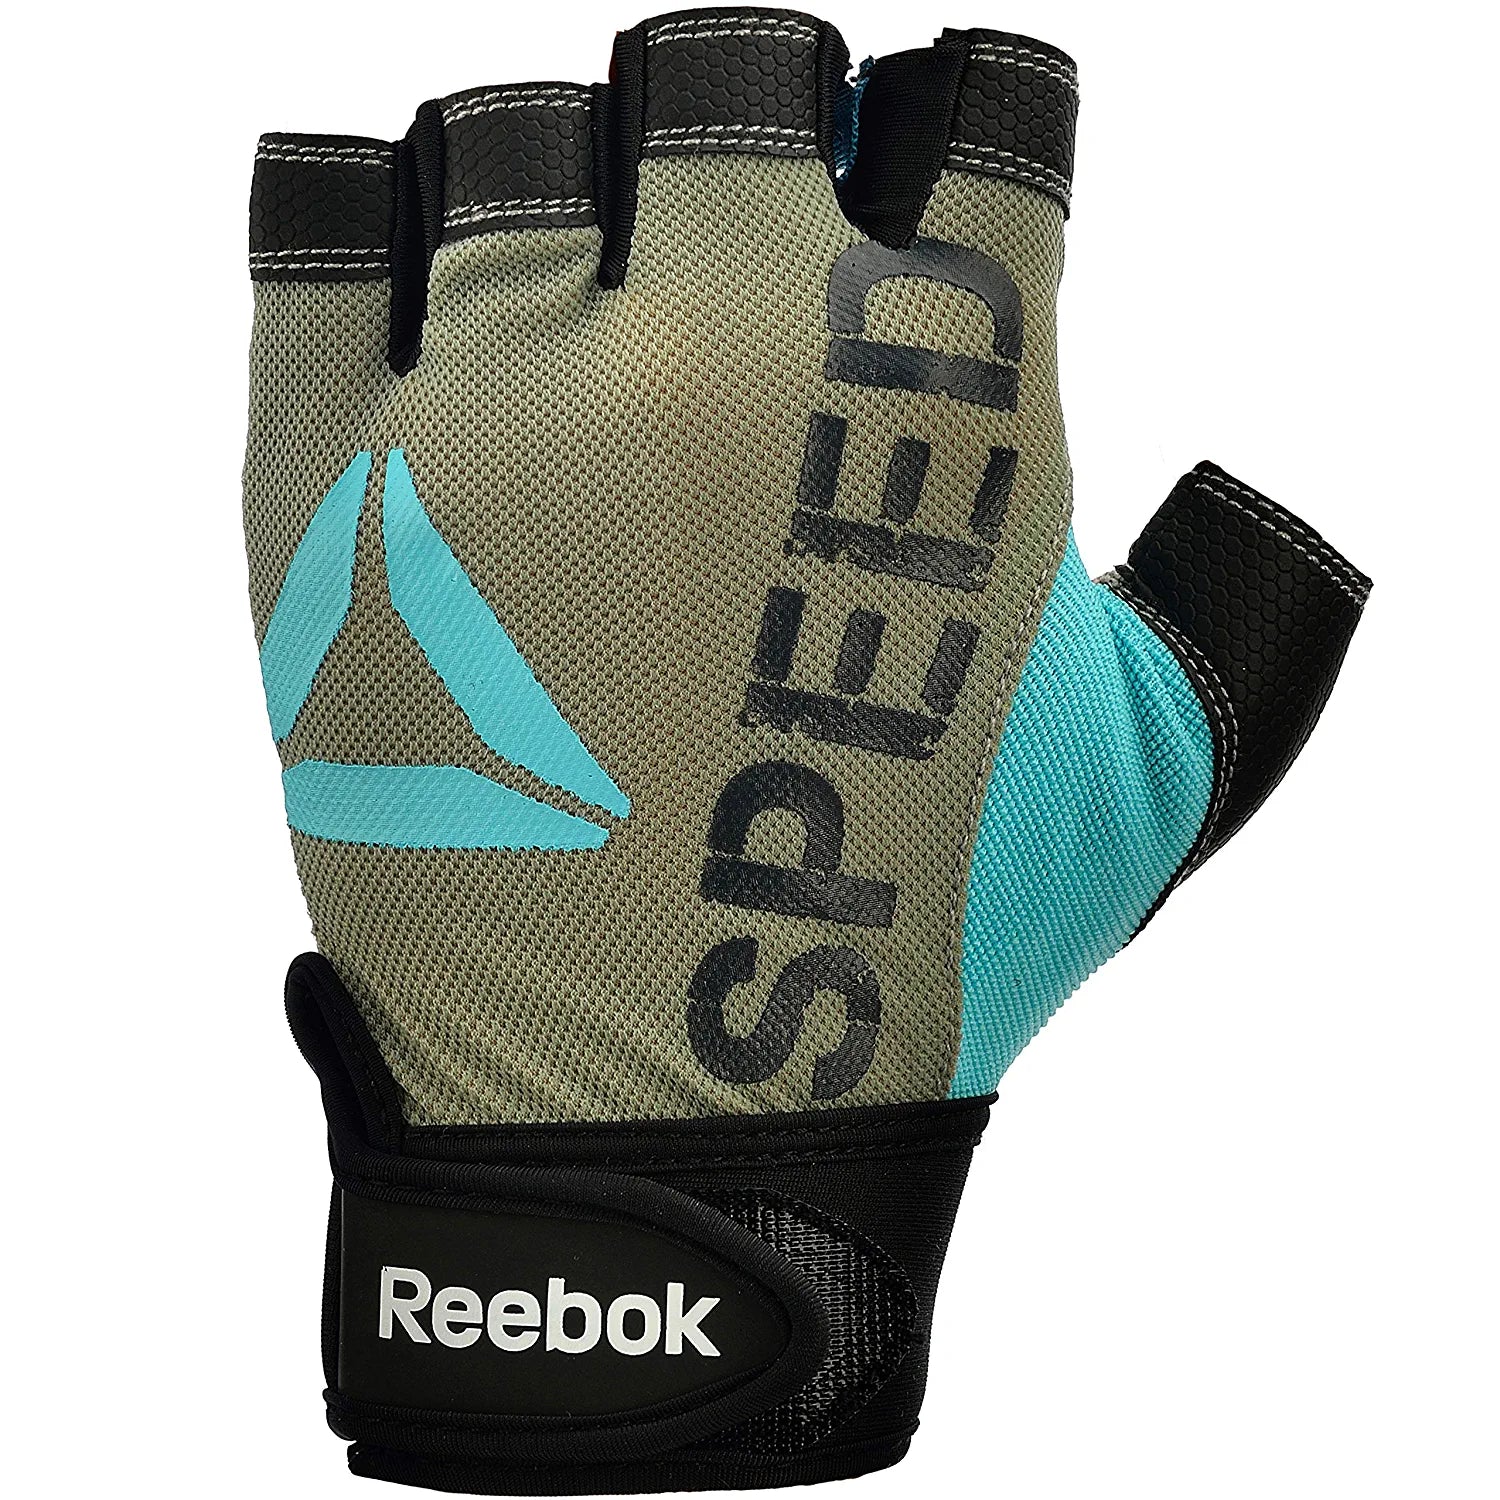 Reebok Premium Speed Training Gym Gloves - Best Price online Prokicksports.com